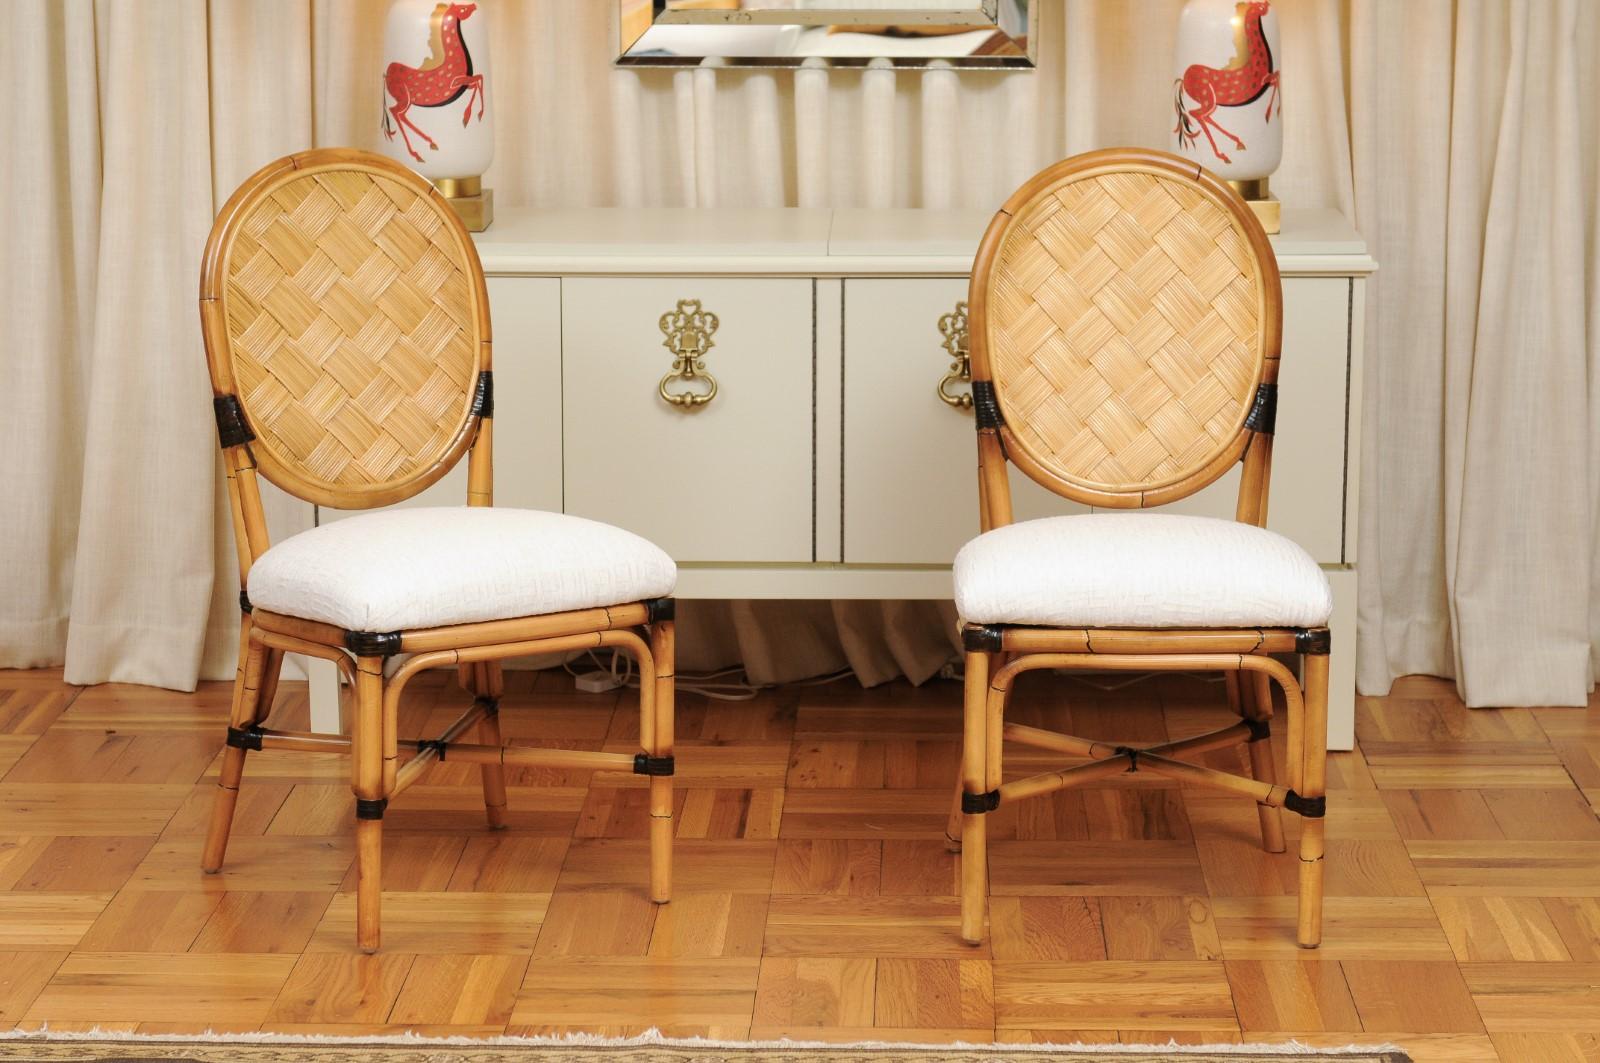 Ce magnifique ensemble unique de chaises de salle à manger est expédié tel qu'il a été photographié par des professionnels et décrit dans le texte de l'annonce : Méticuleusement restauré par des professionnels, nouvellement tapissé et complètement